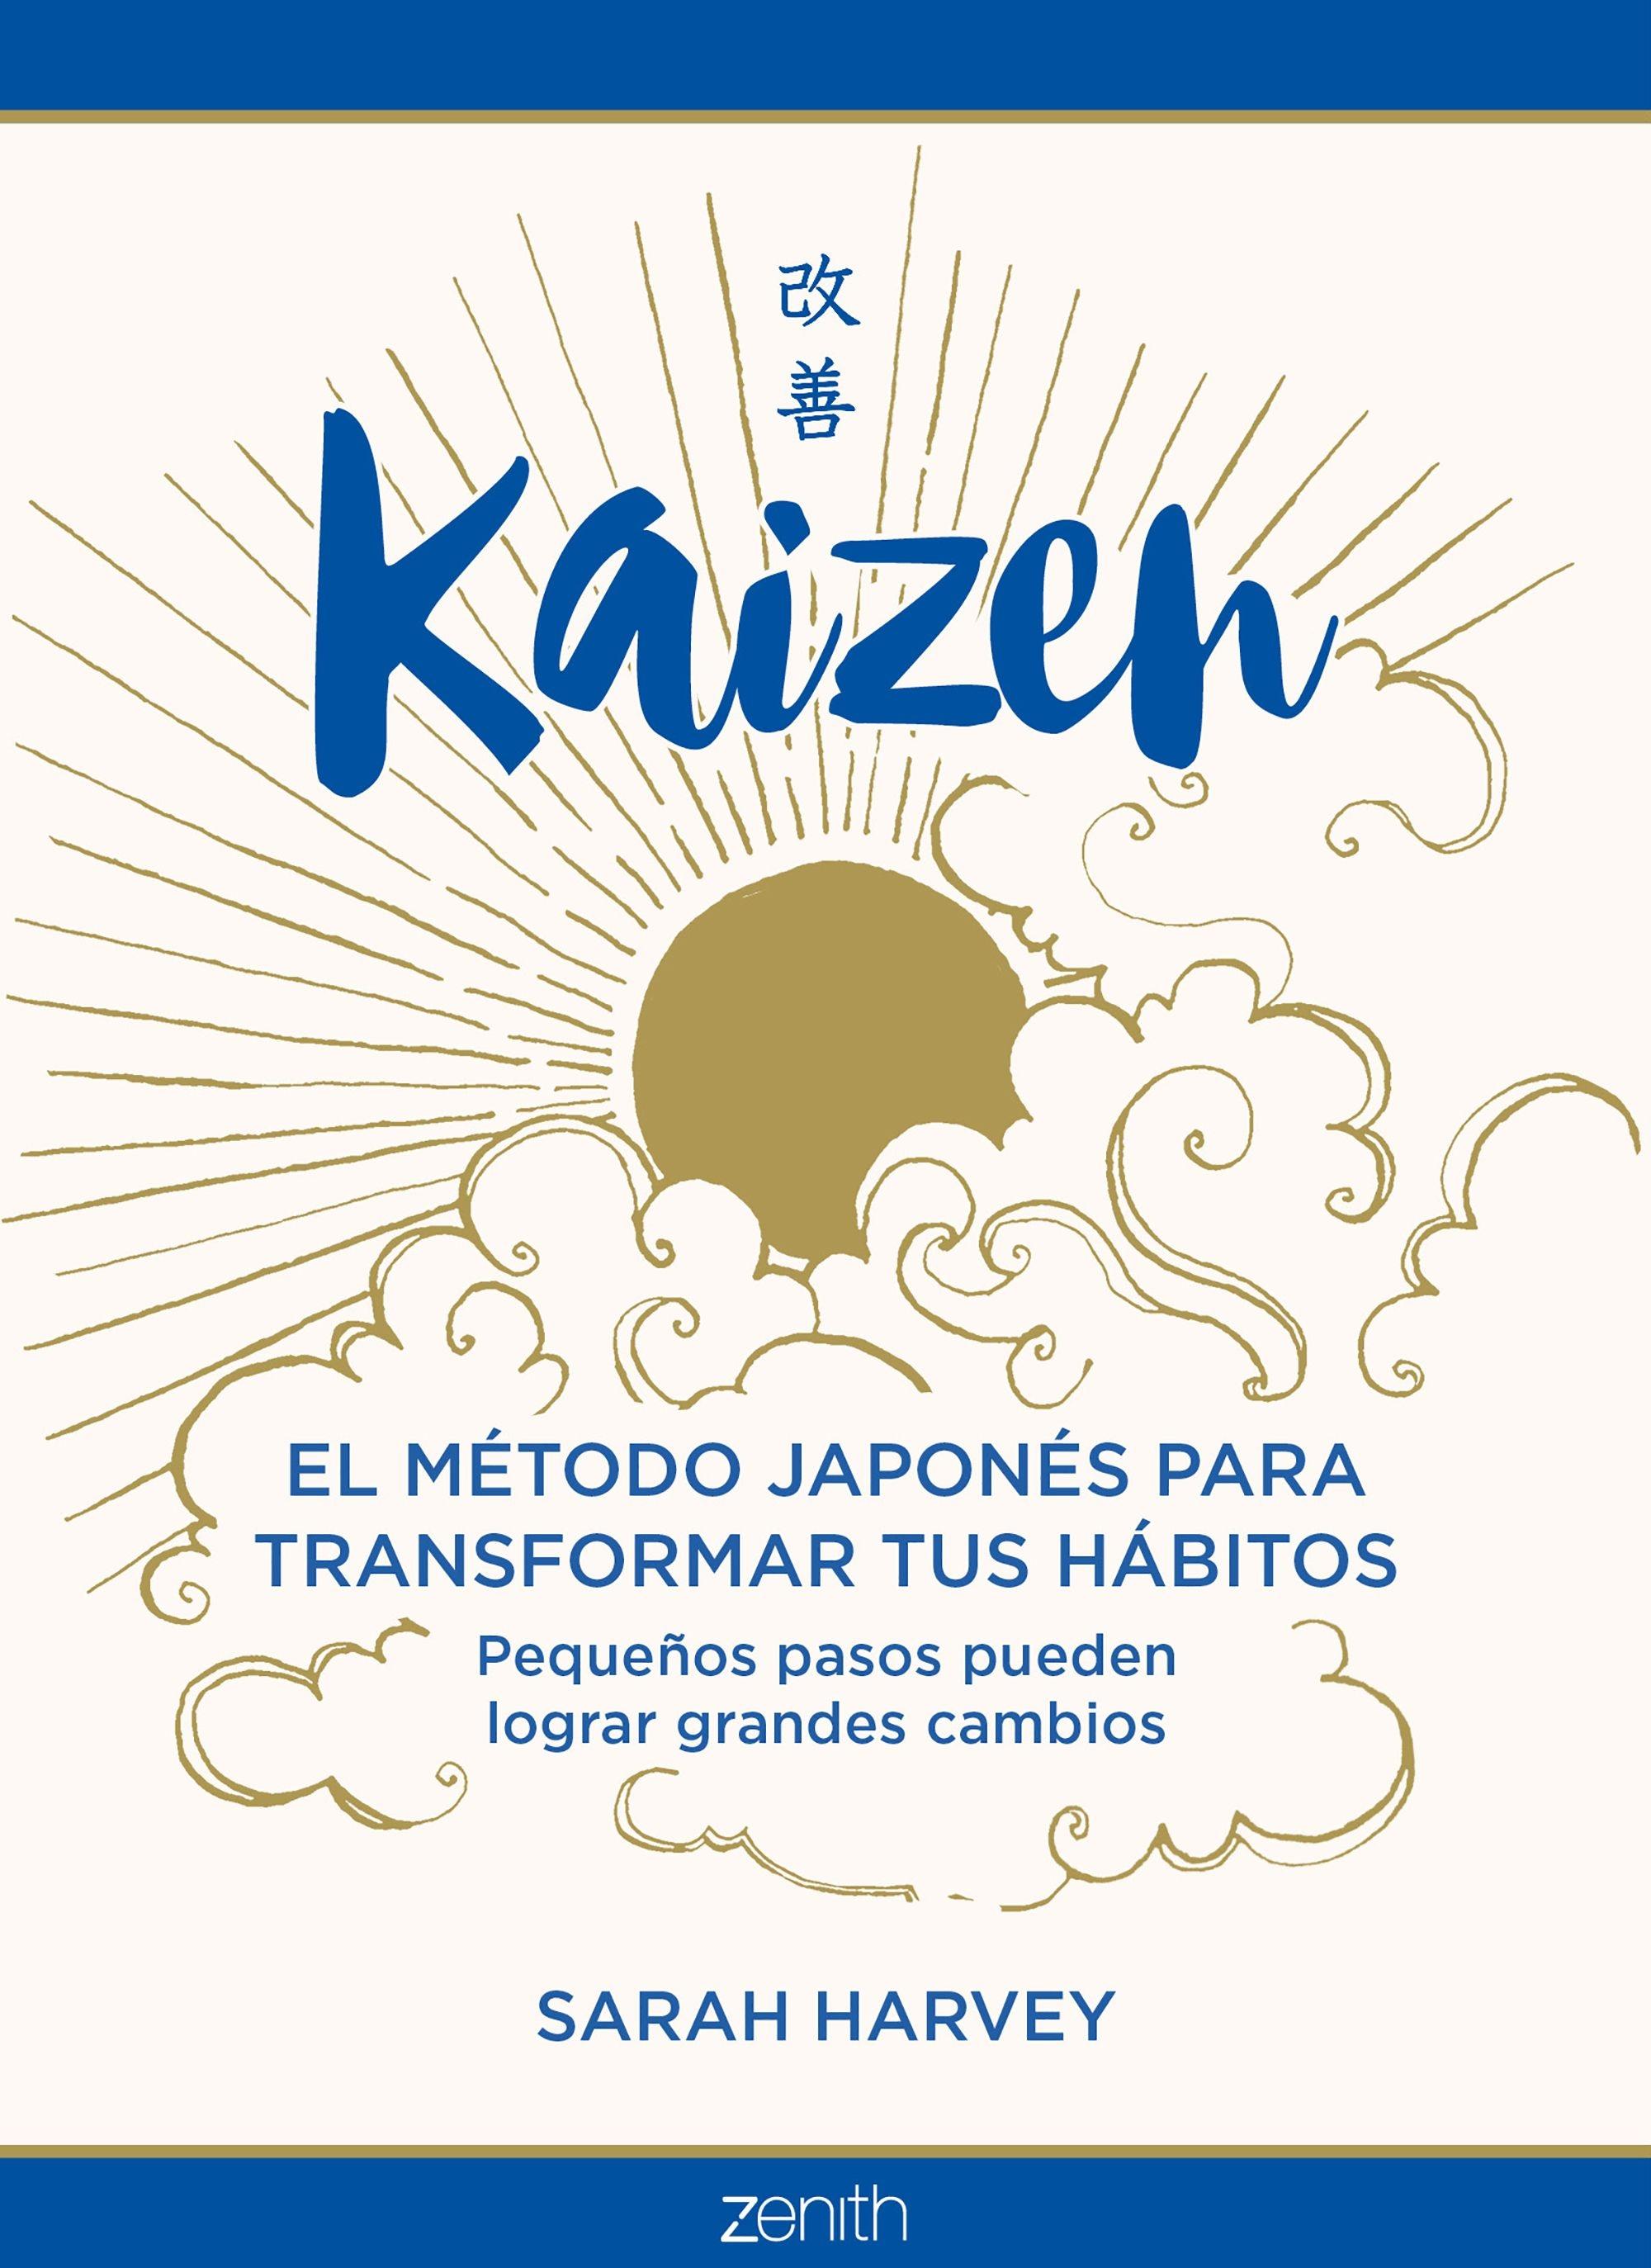 Kaizen "El método japonés para transformar tus hábitos"